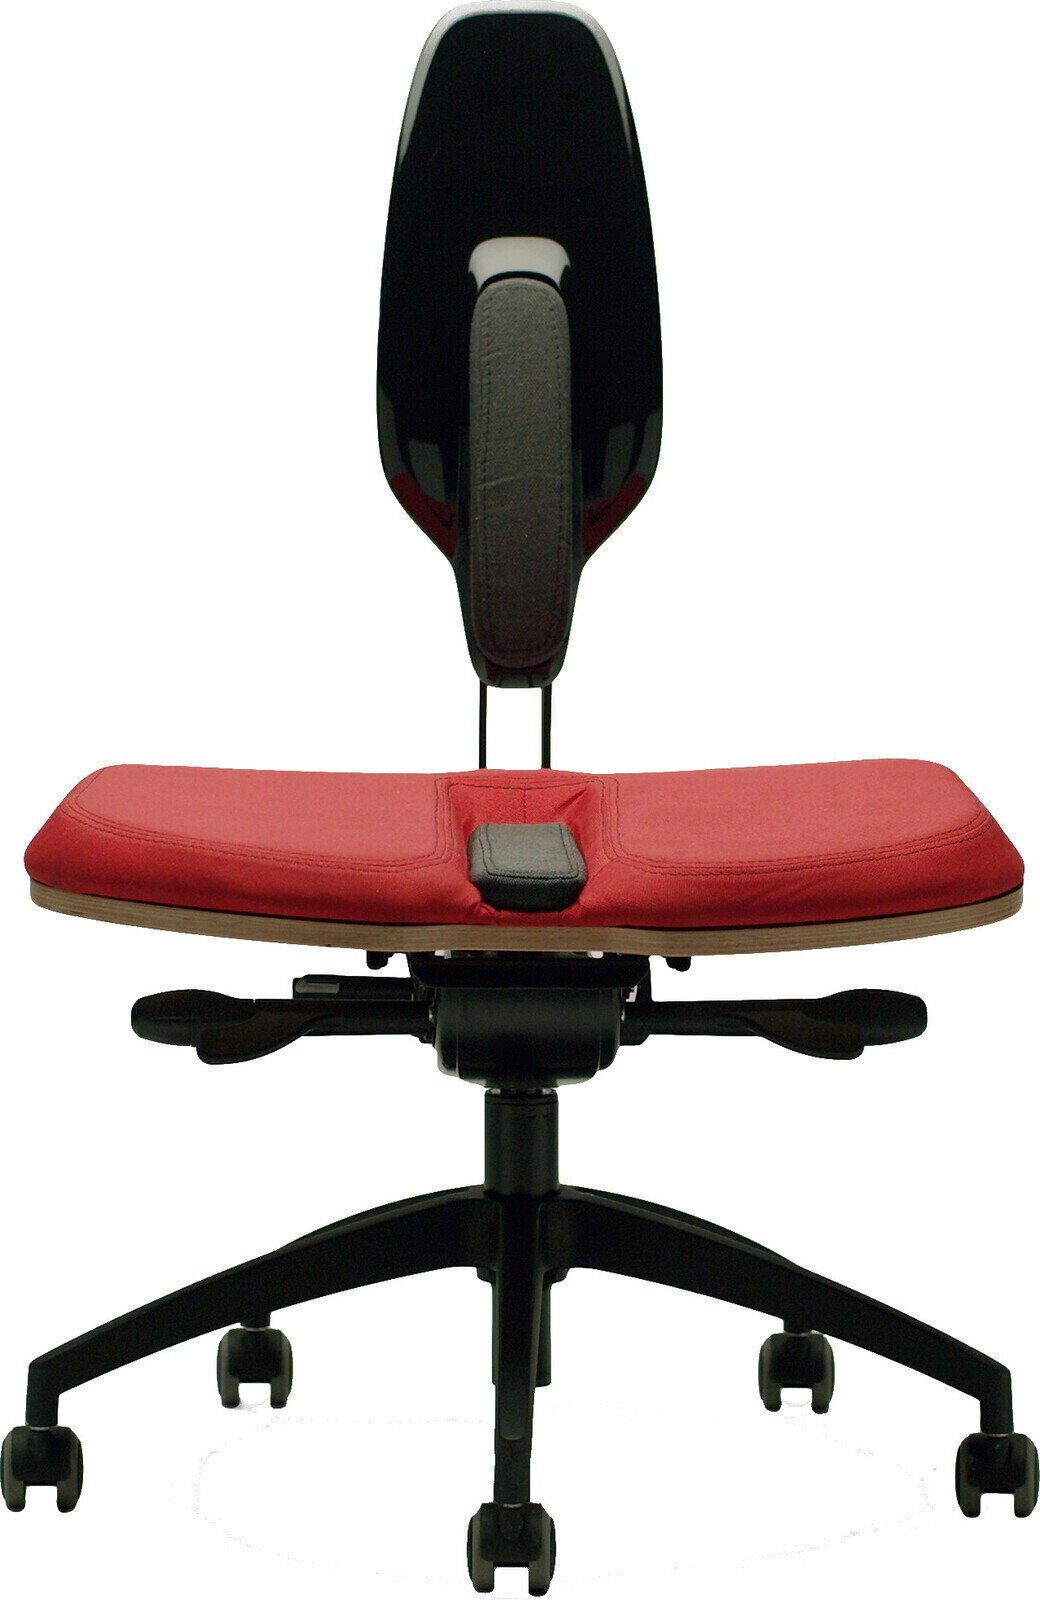 Studio furniture Neseda Premium Red